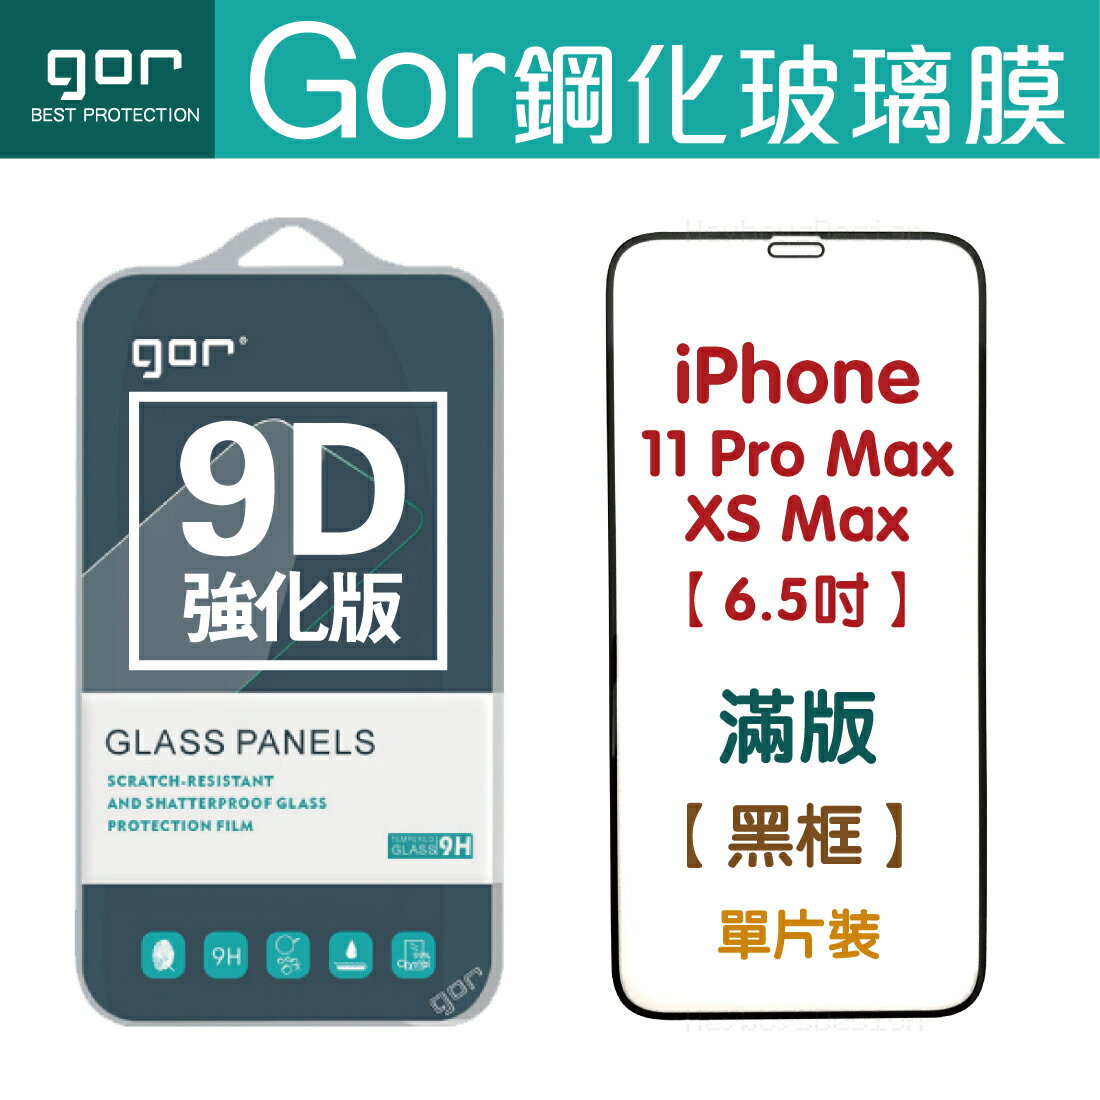 現貨 GOR 9H iPhone 11 Pro Max / XS MAX 6.5吋 9D全玻璃曲面 鋼化玻璃保護貼 全滿版